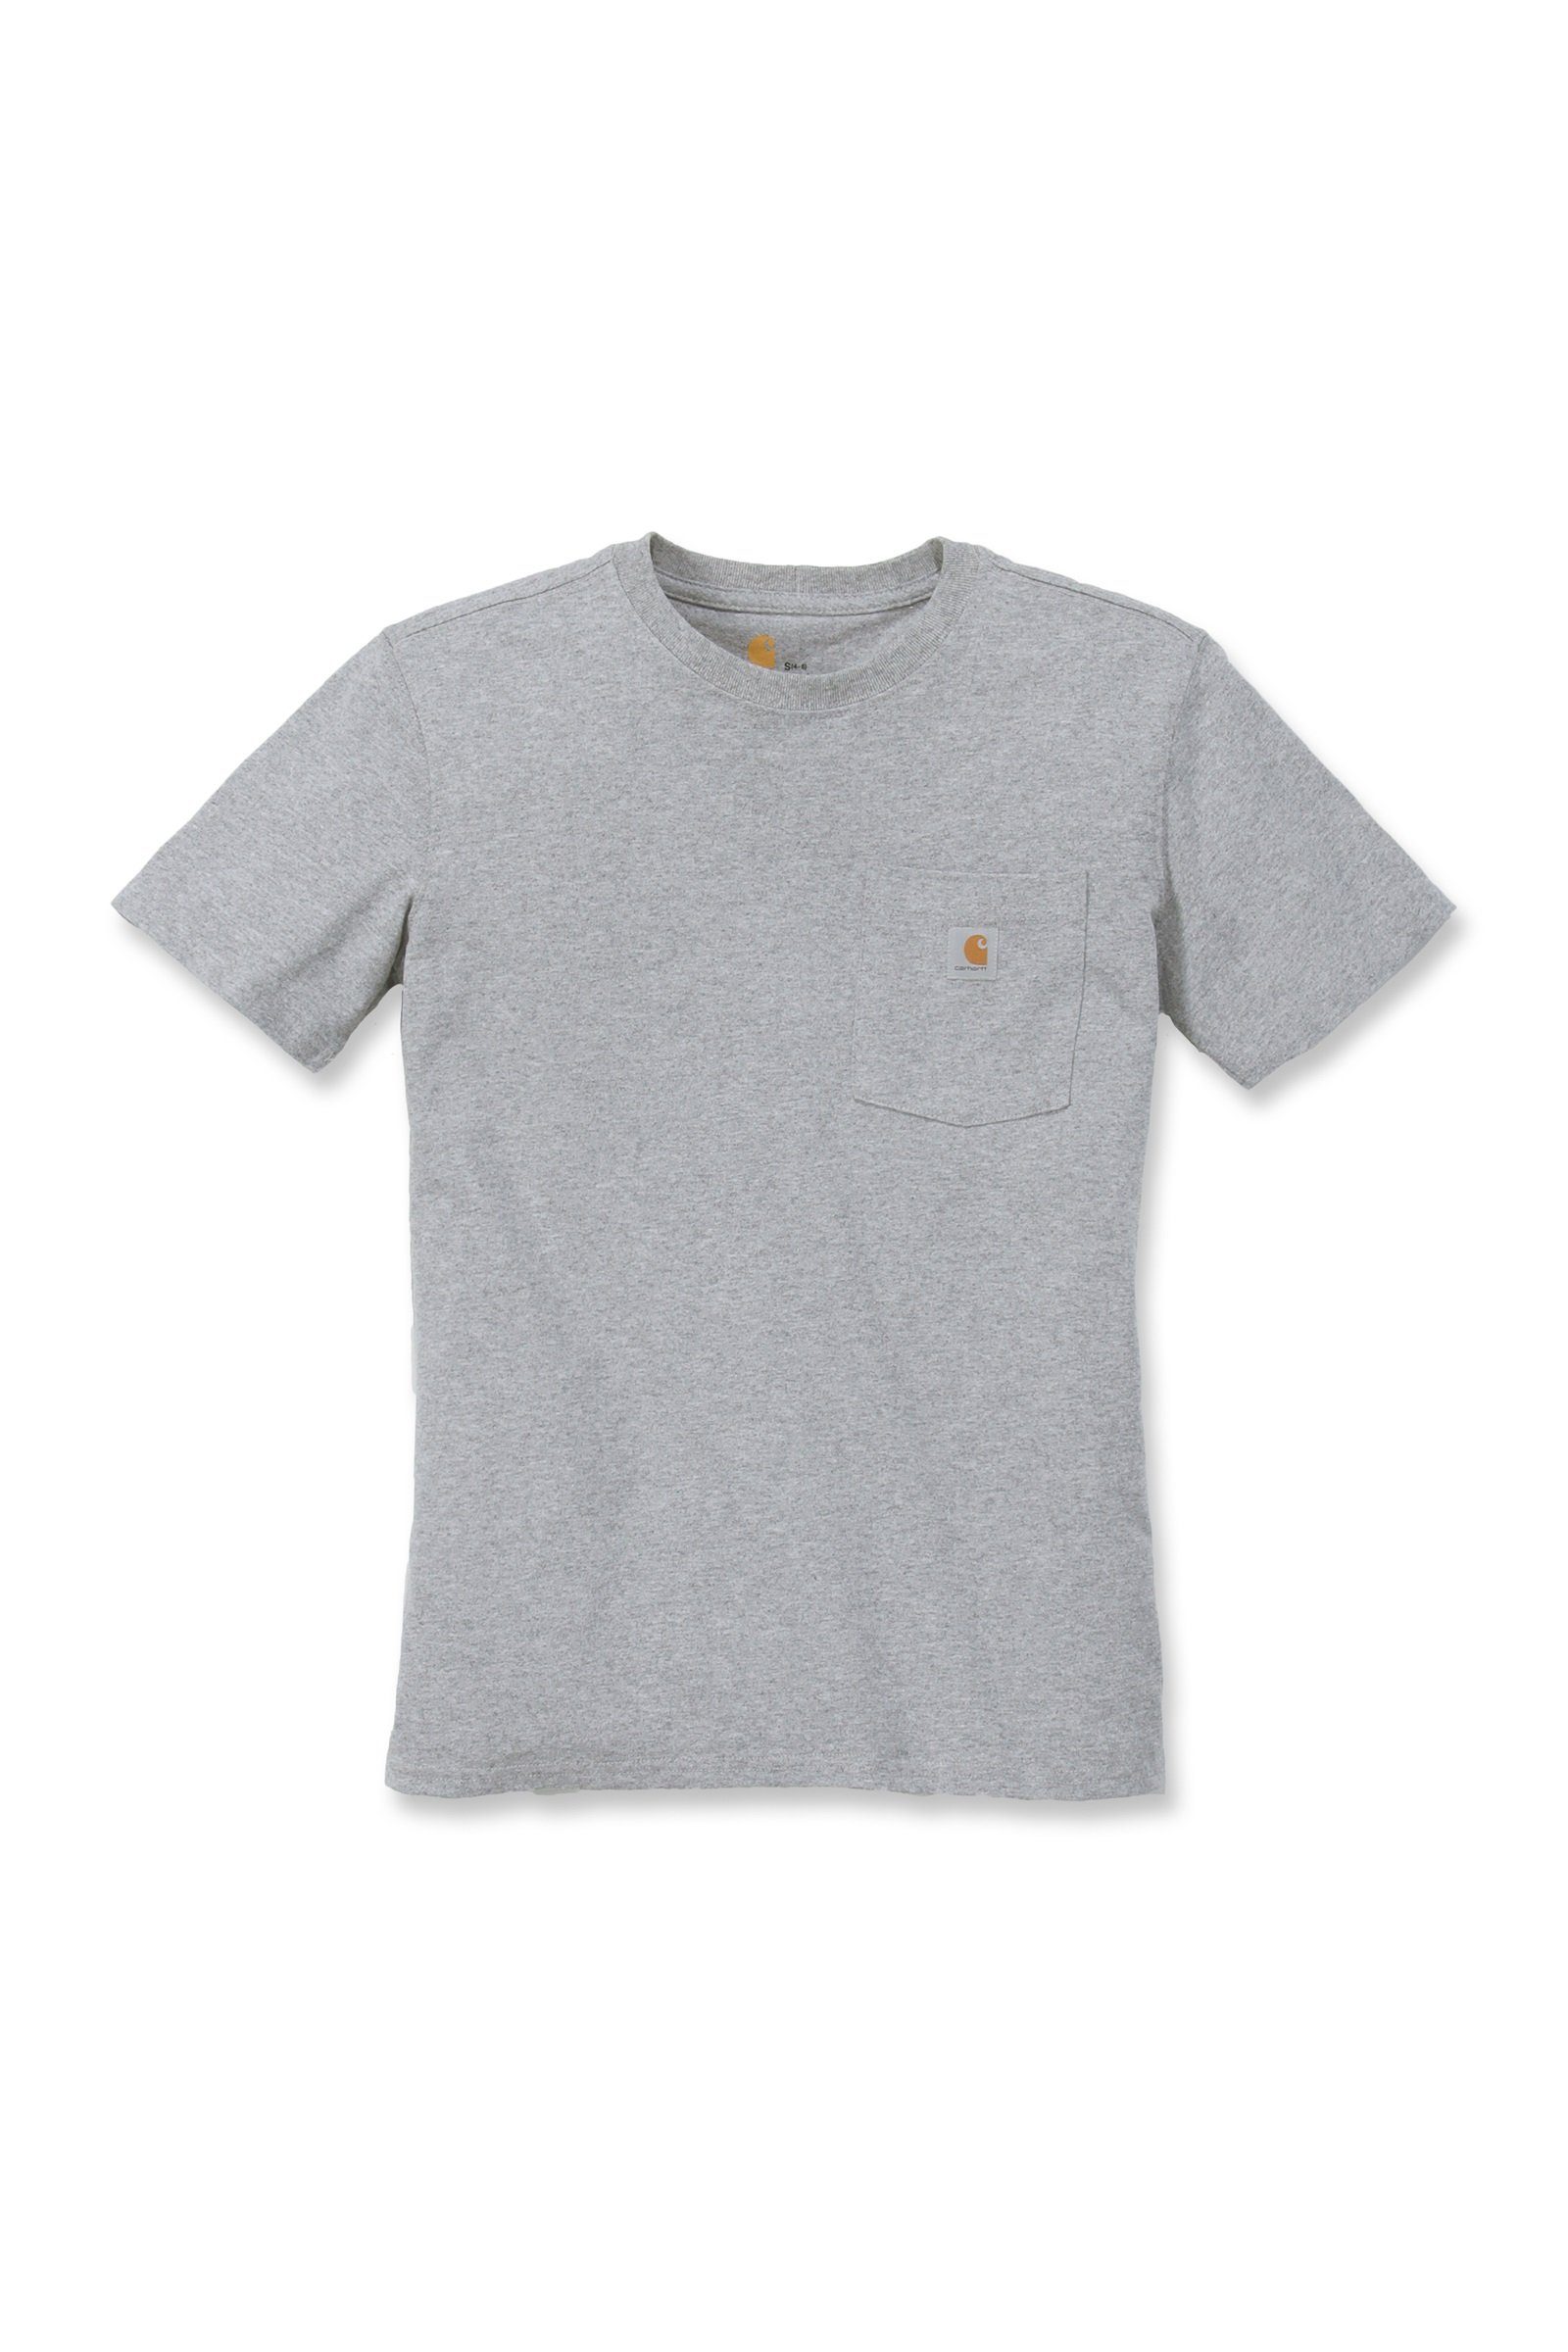 T-Shirt Adult T-Shirt Loose Carhartt heather Heavyweight Fit grey Carhartt Damen Short-Sleeve Pocket